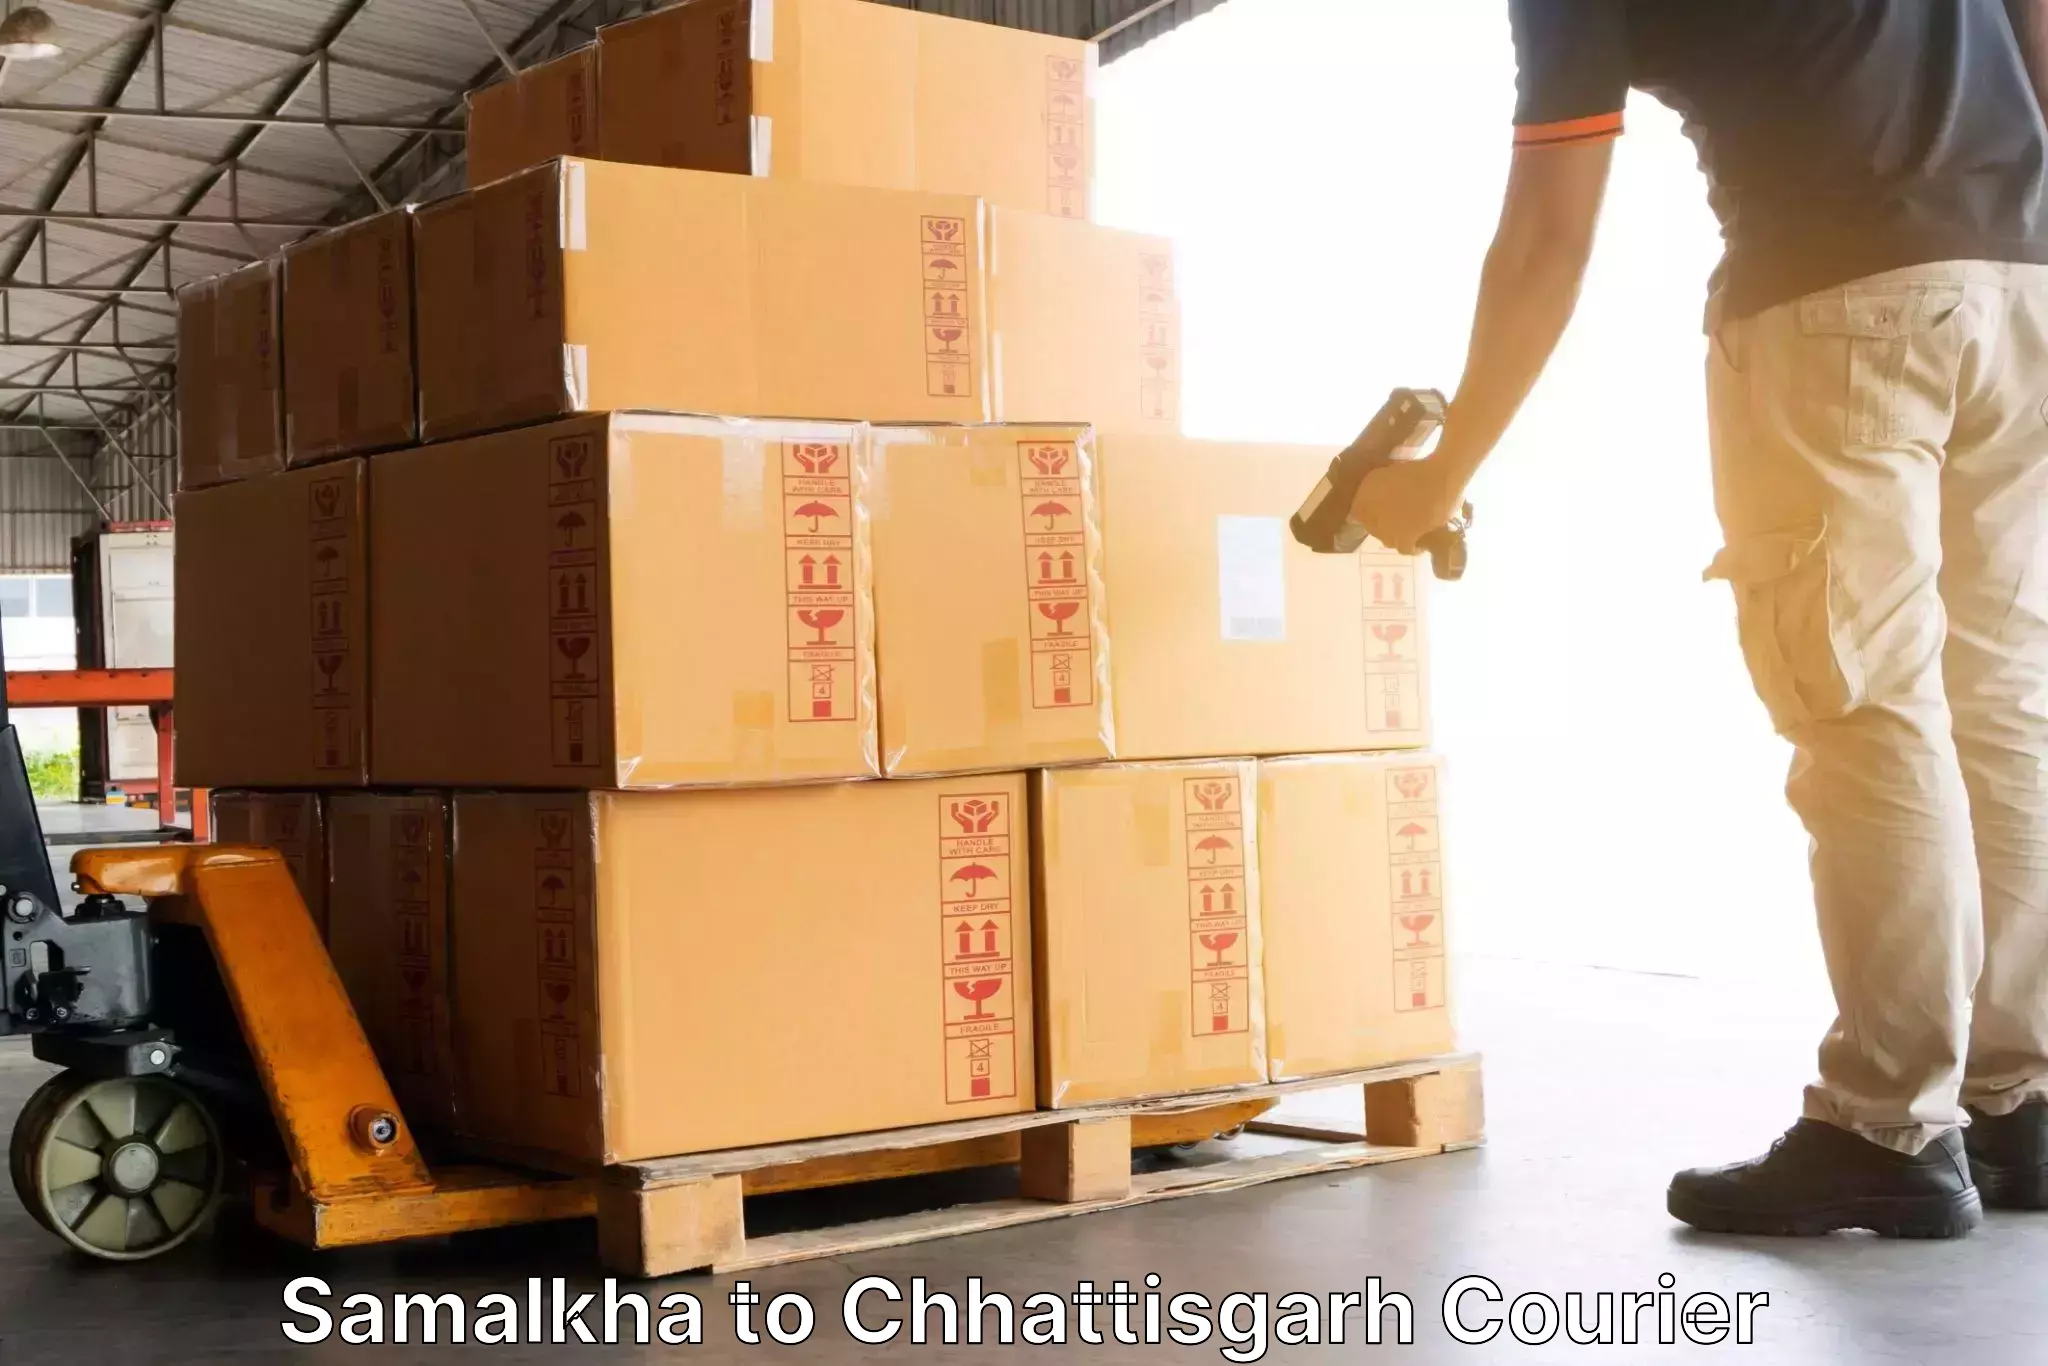 Doorstep delivery service Samalkha to Korea Chhattisgarh